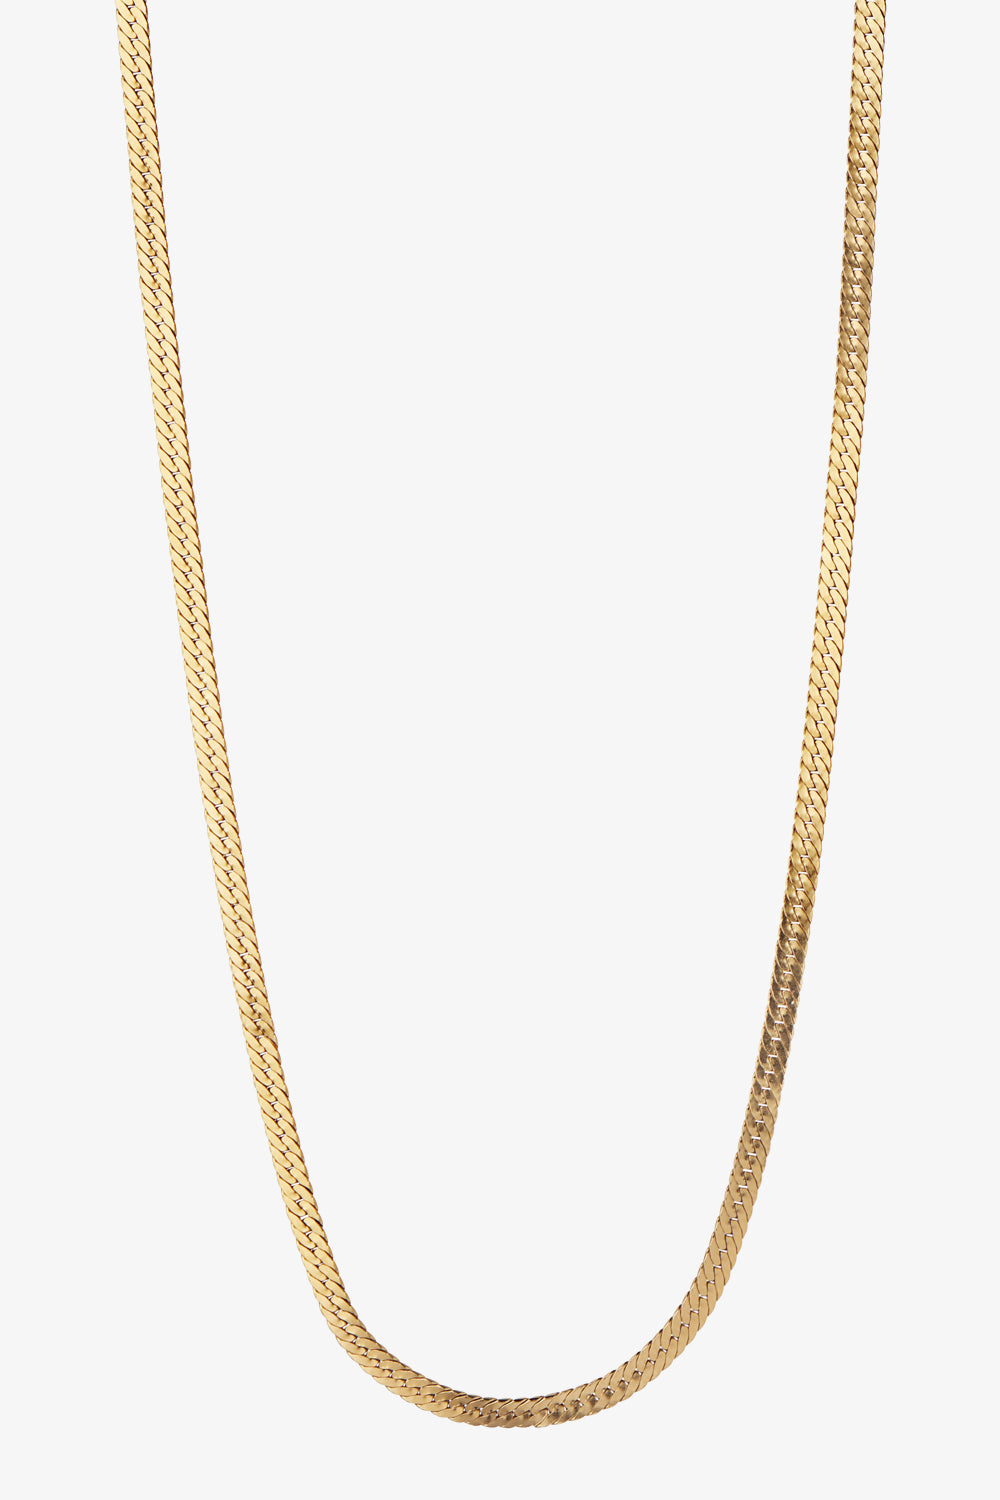 Short Snake Necklace - Gold - Stine A